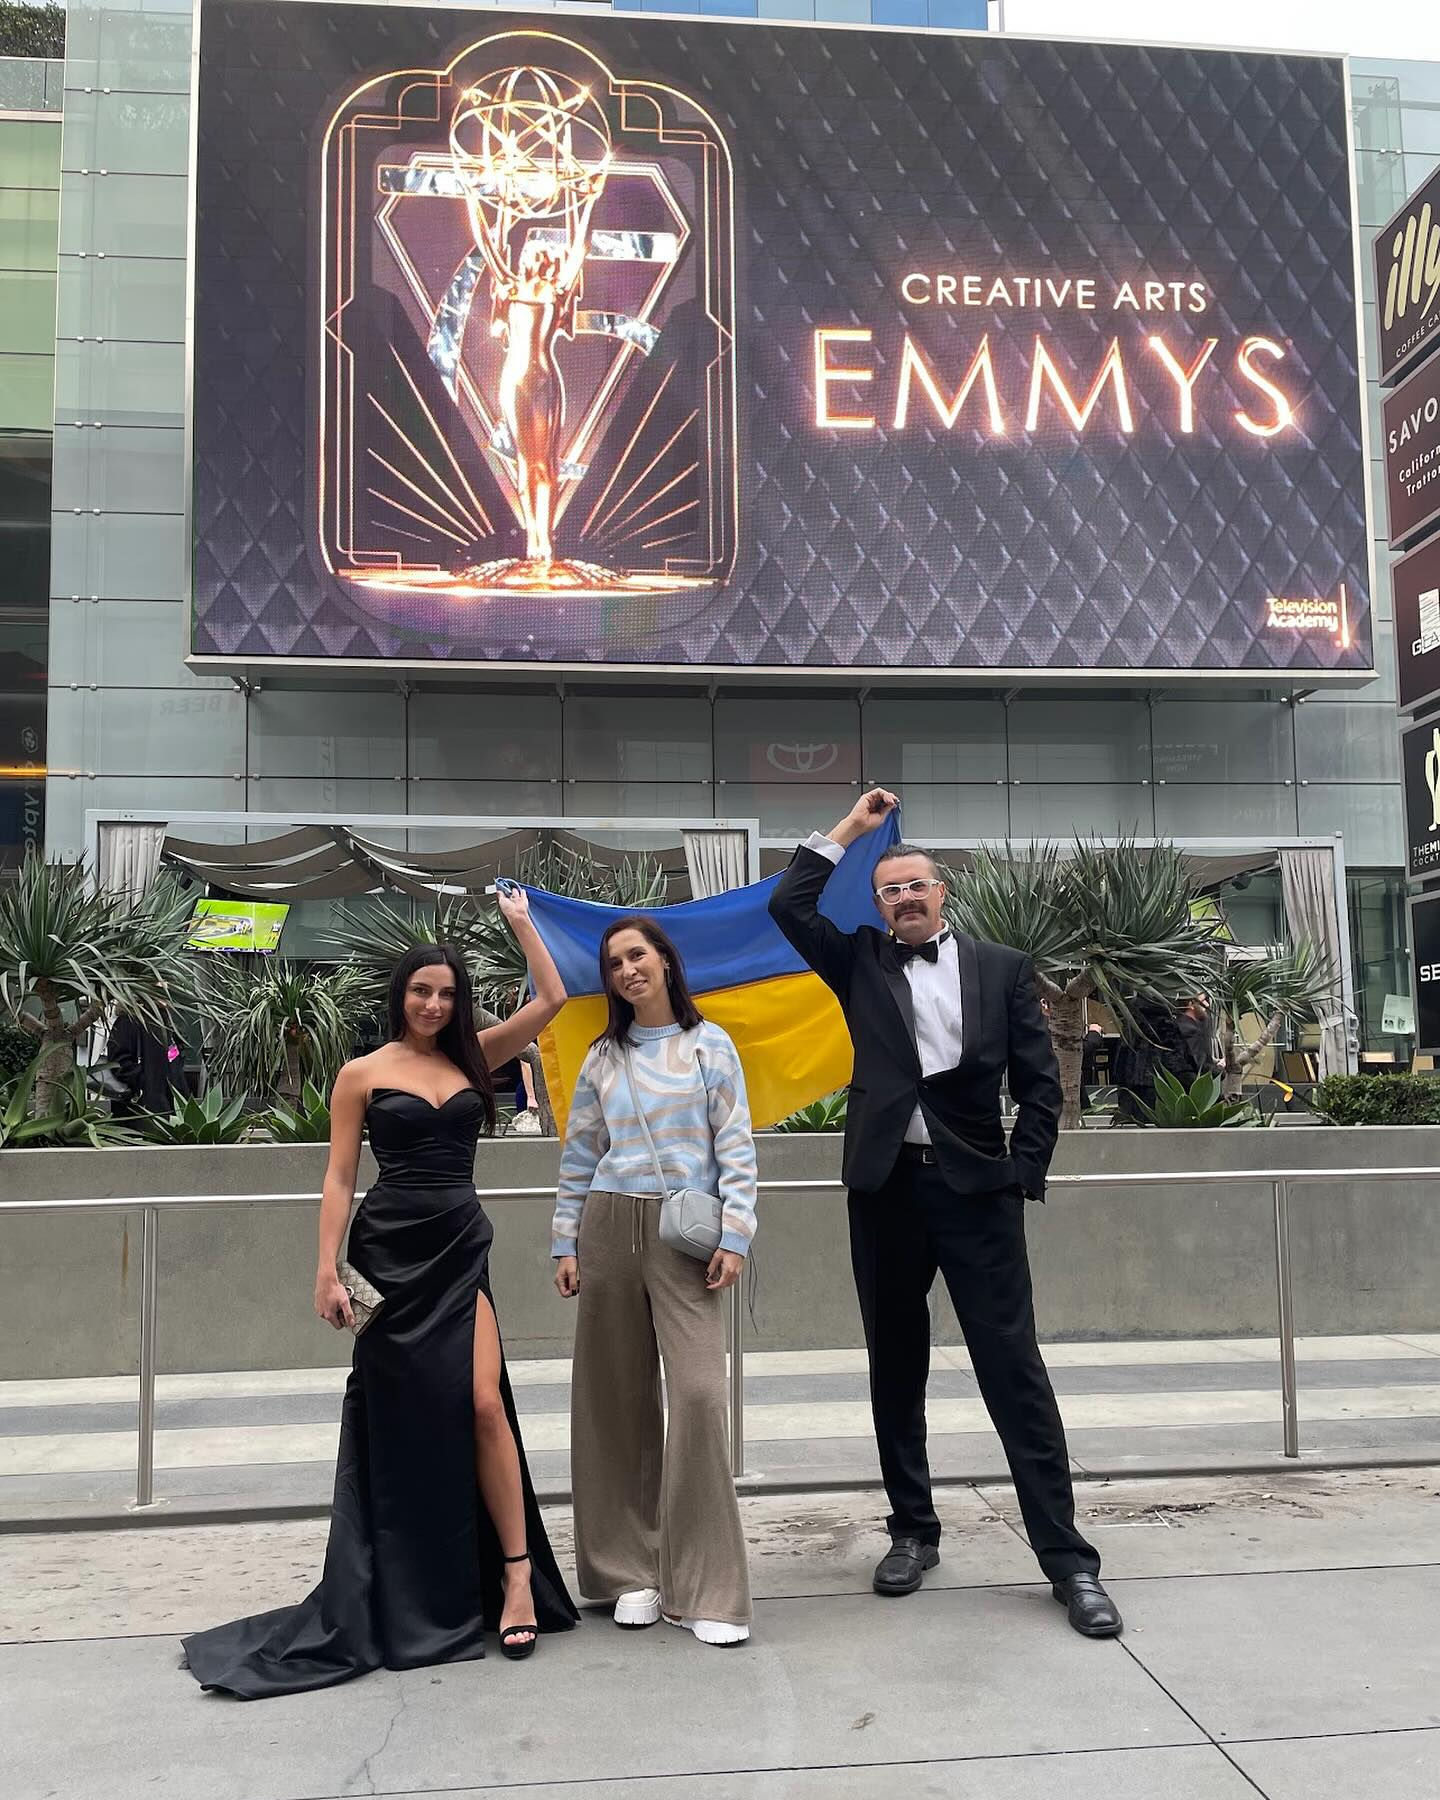 KWA Sound Production з України увійшла до світового клубу кінематографії, отримавши заслужену номінацію на Emmy Award